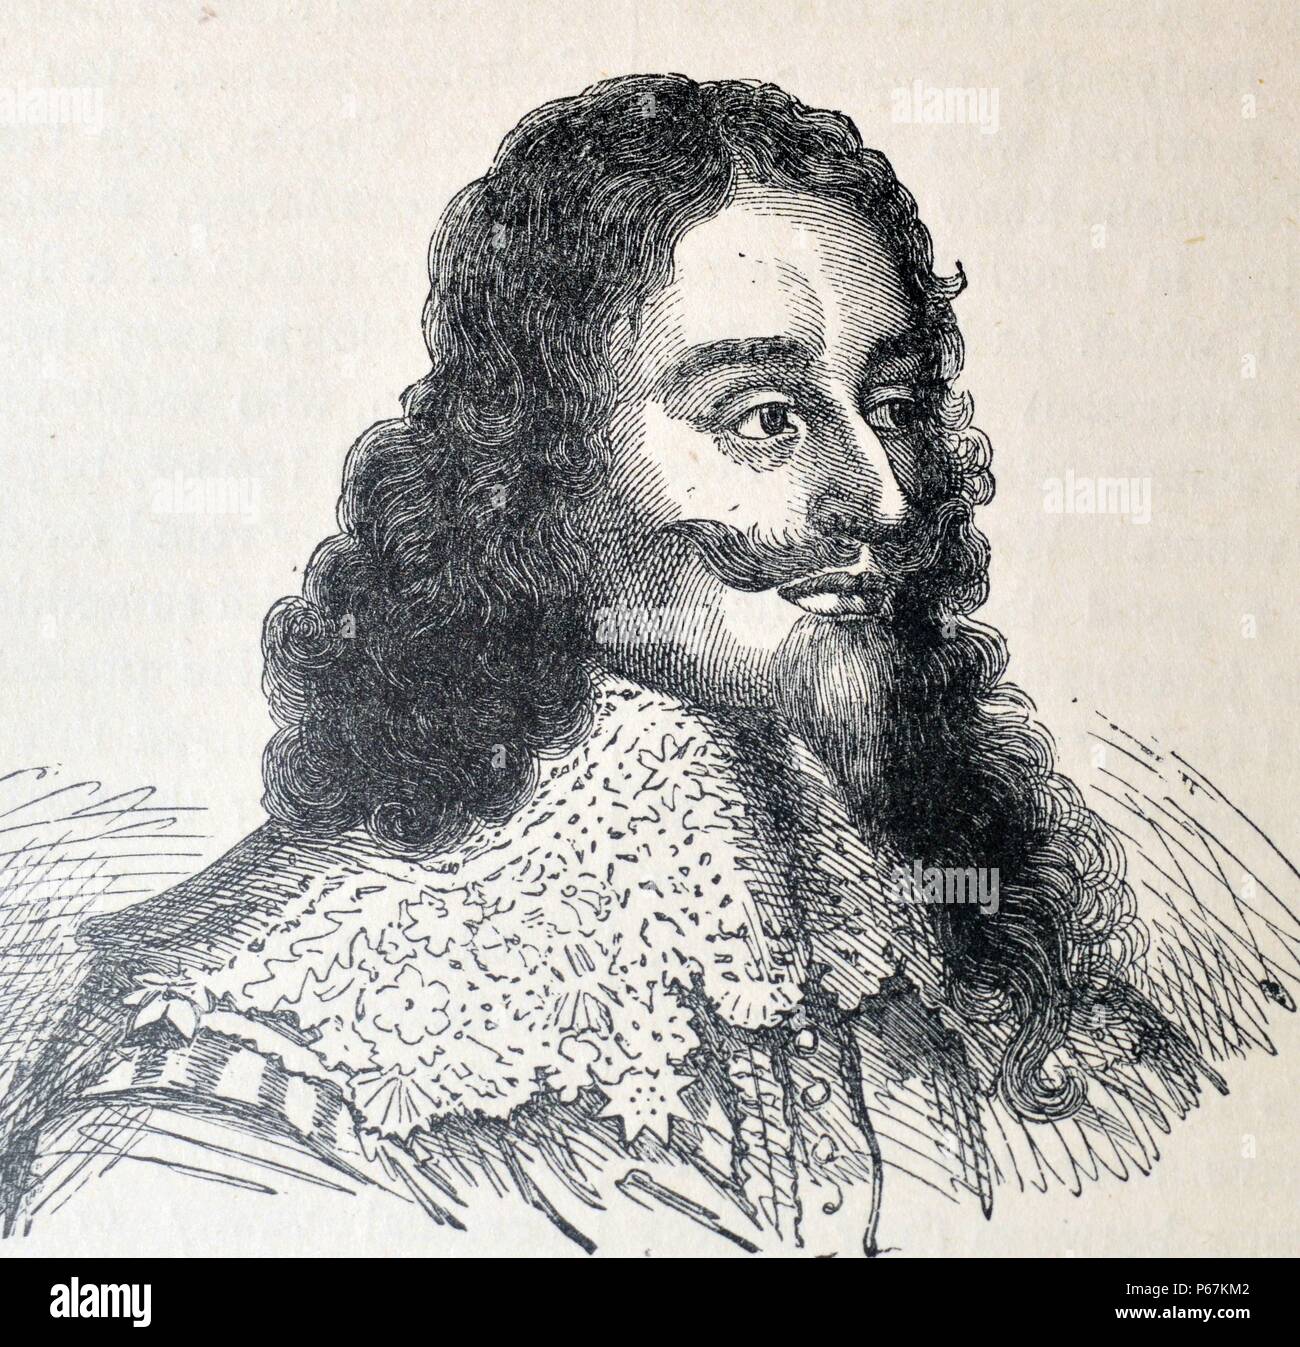 Grabado de Carlos I de Inglaterra (1600-1649), monarca de los Tres Reinos de Inglaterra, Escocia e Irlanda del 27 de marzo de 1625 hasta su ejecución en 1649. Fecha Siglo xvii Foto de stock